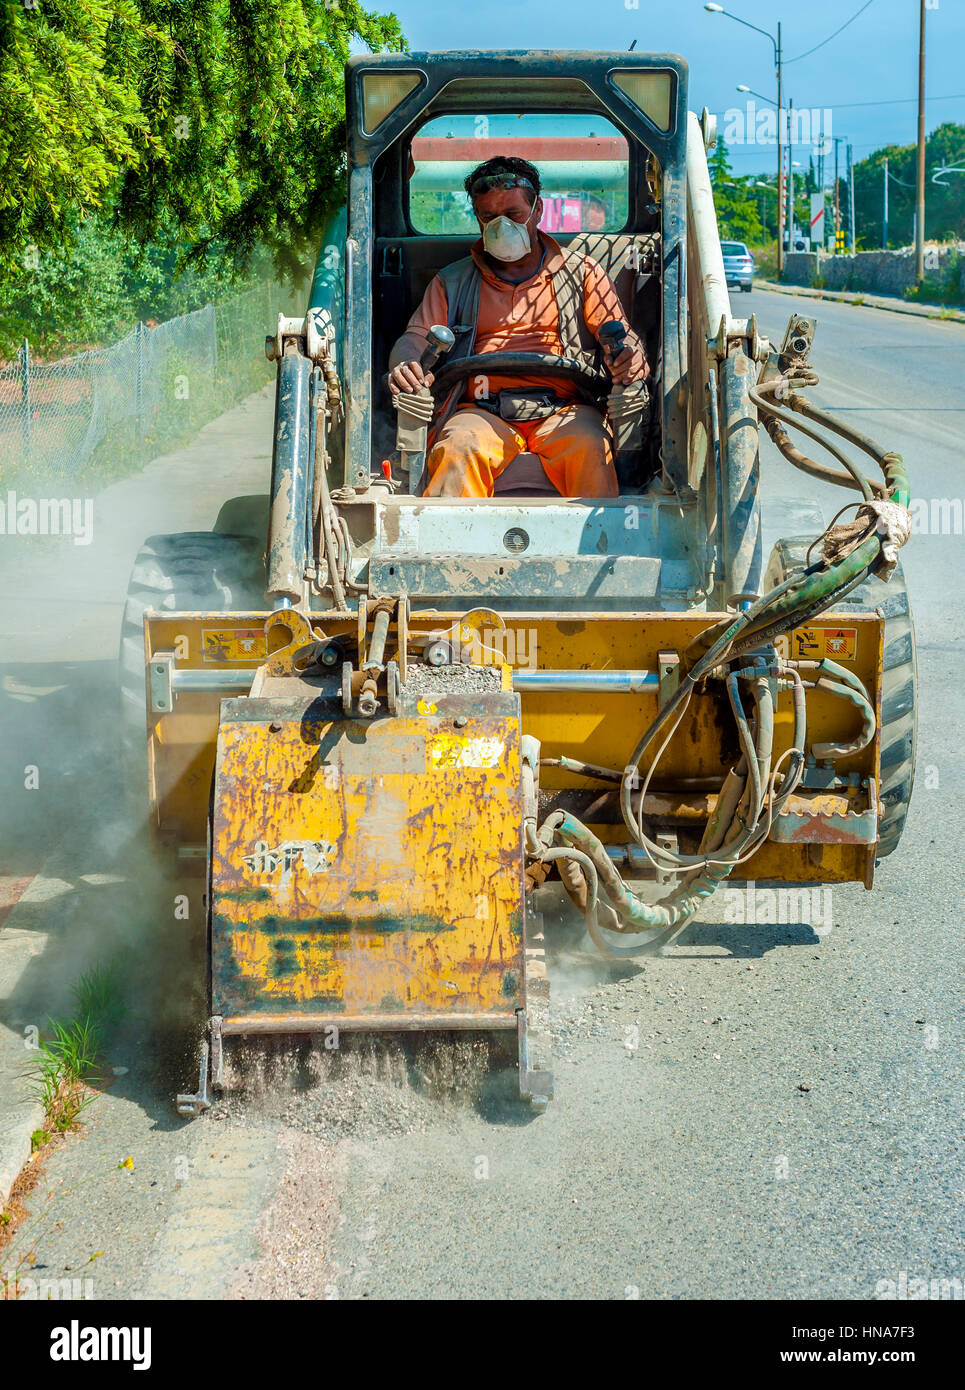 Déposer les mini-pilote travailleur porté pendant la réparation d'asphalte Travaux routiers Banque D'Images